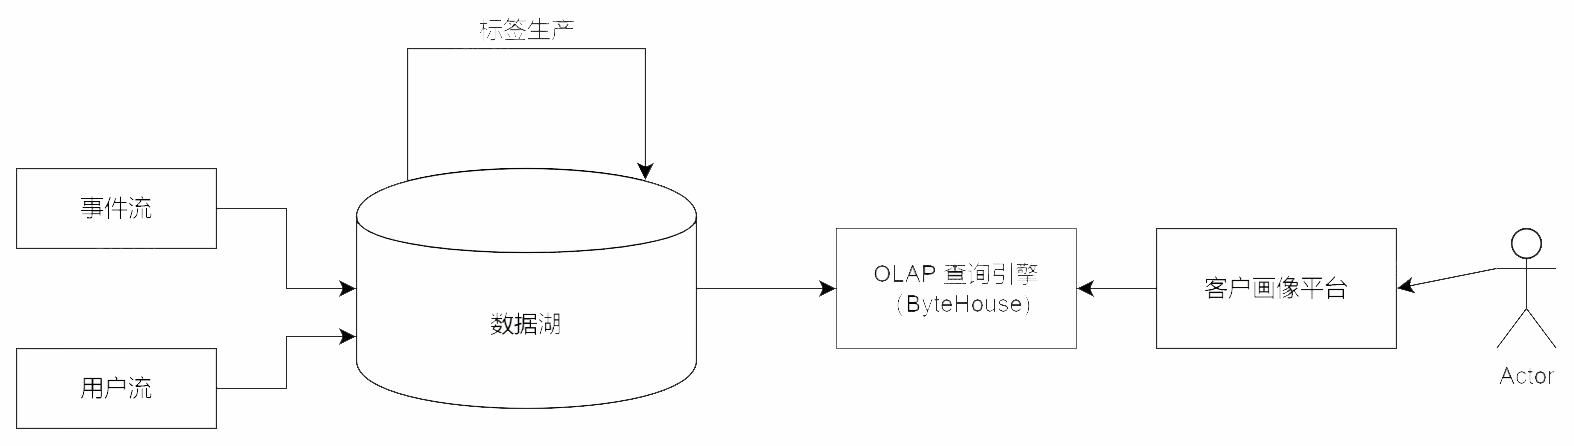 10亿数据、查询<10s，论基于OLAP搭建广告系统的正确姿势 _SQL